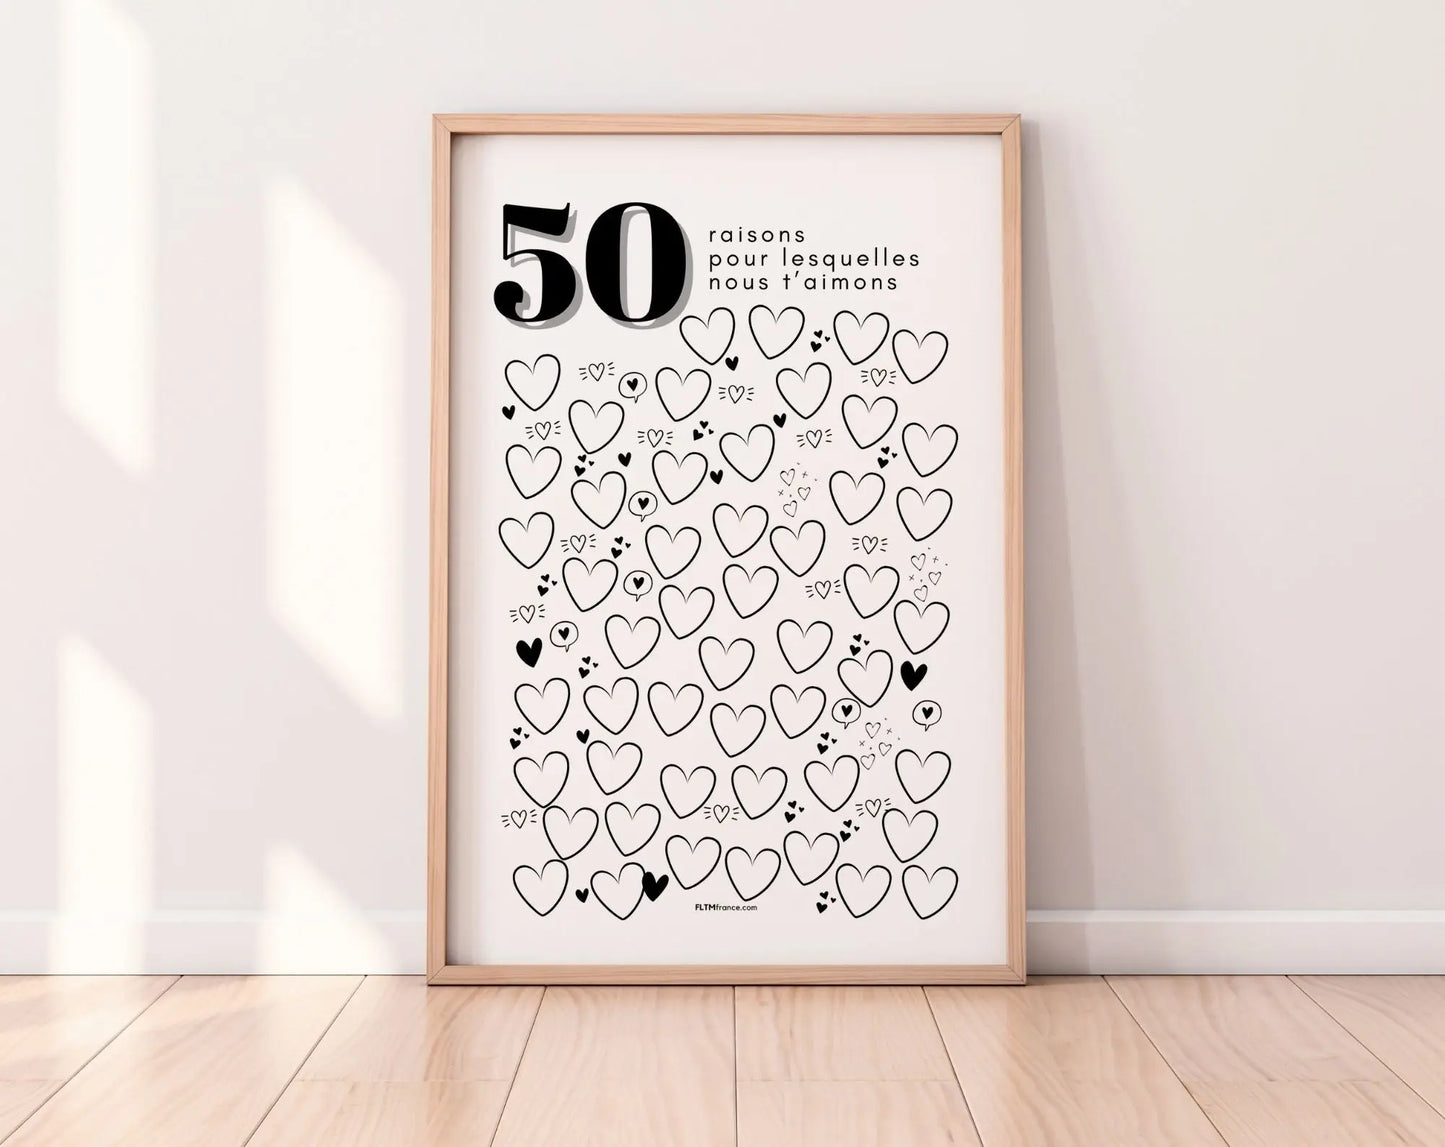 Affiche 50 raisons pour lesquelles nous t’aimons - Livre d'or 50 ans FLTMfrance